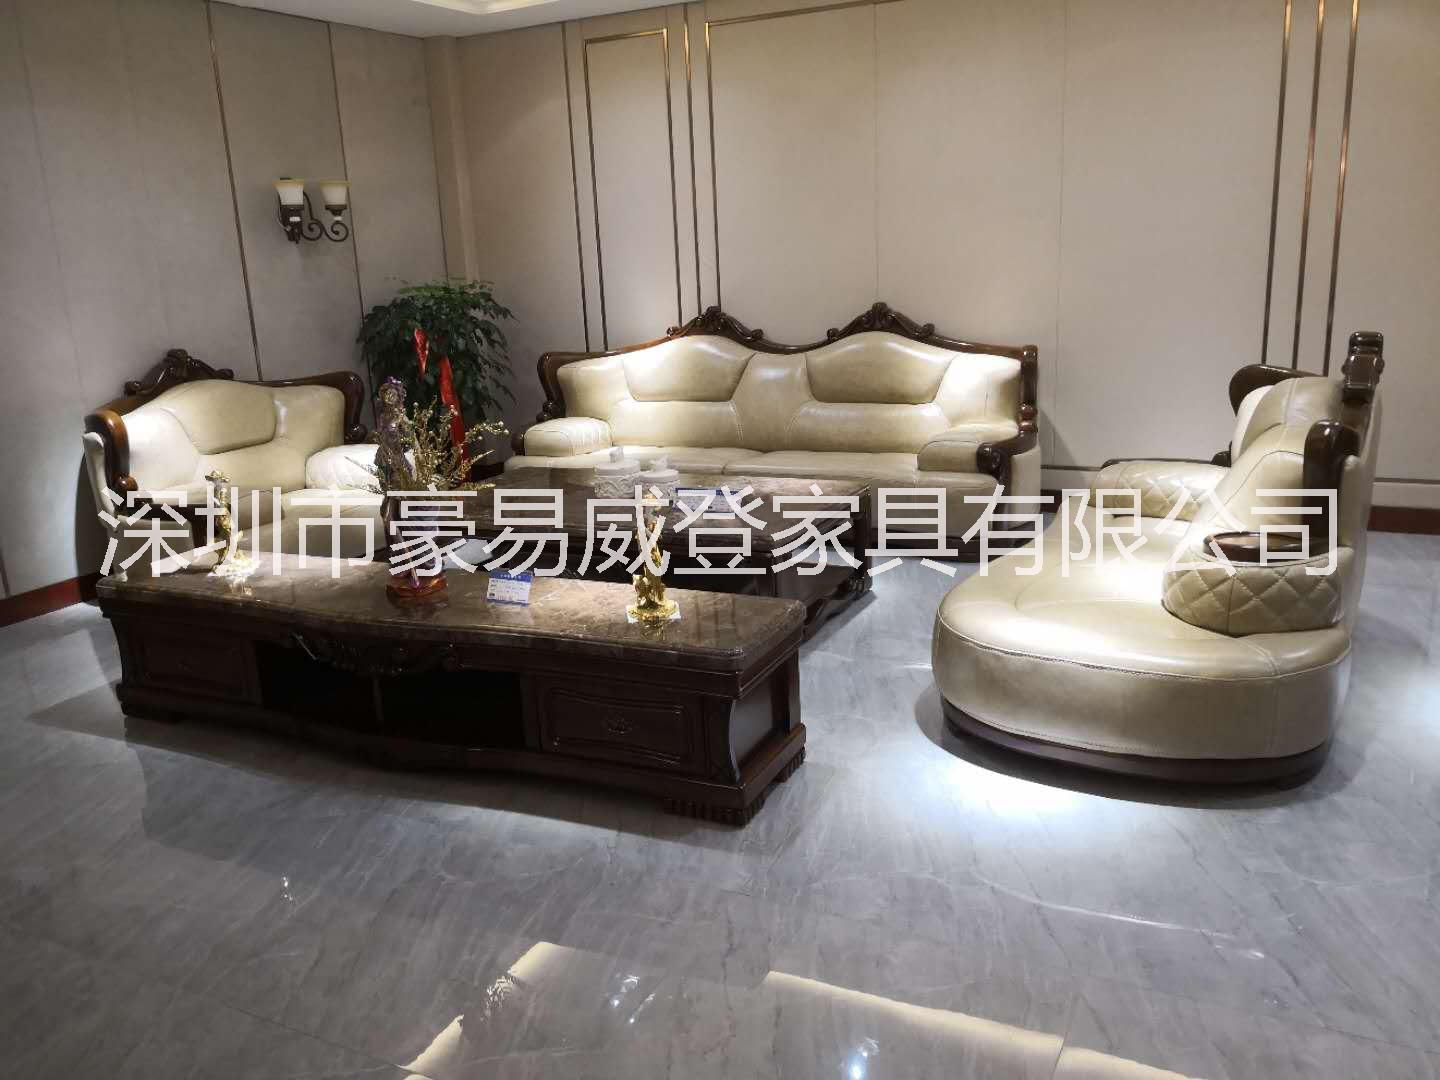 高档沙发   深圳优质沙发品牌   深圳沙发    广东优质沙发品牌